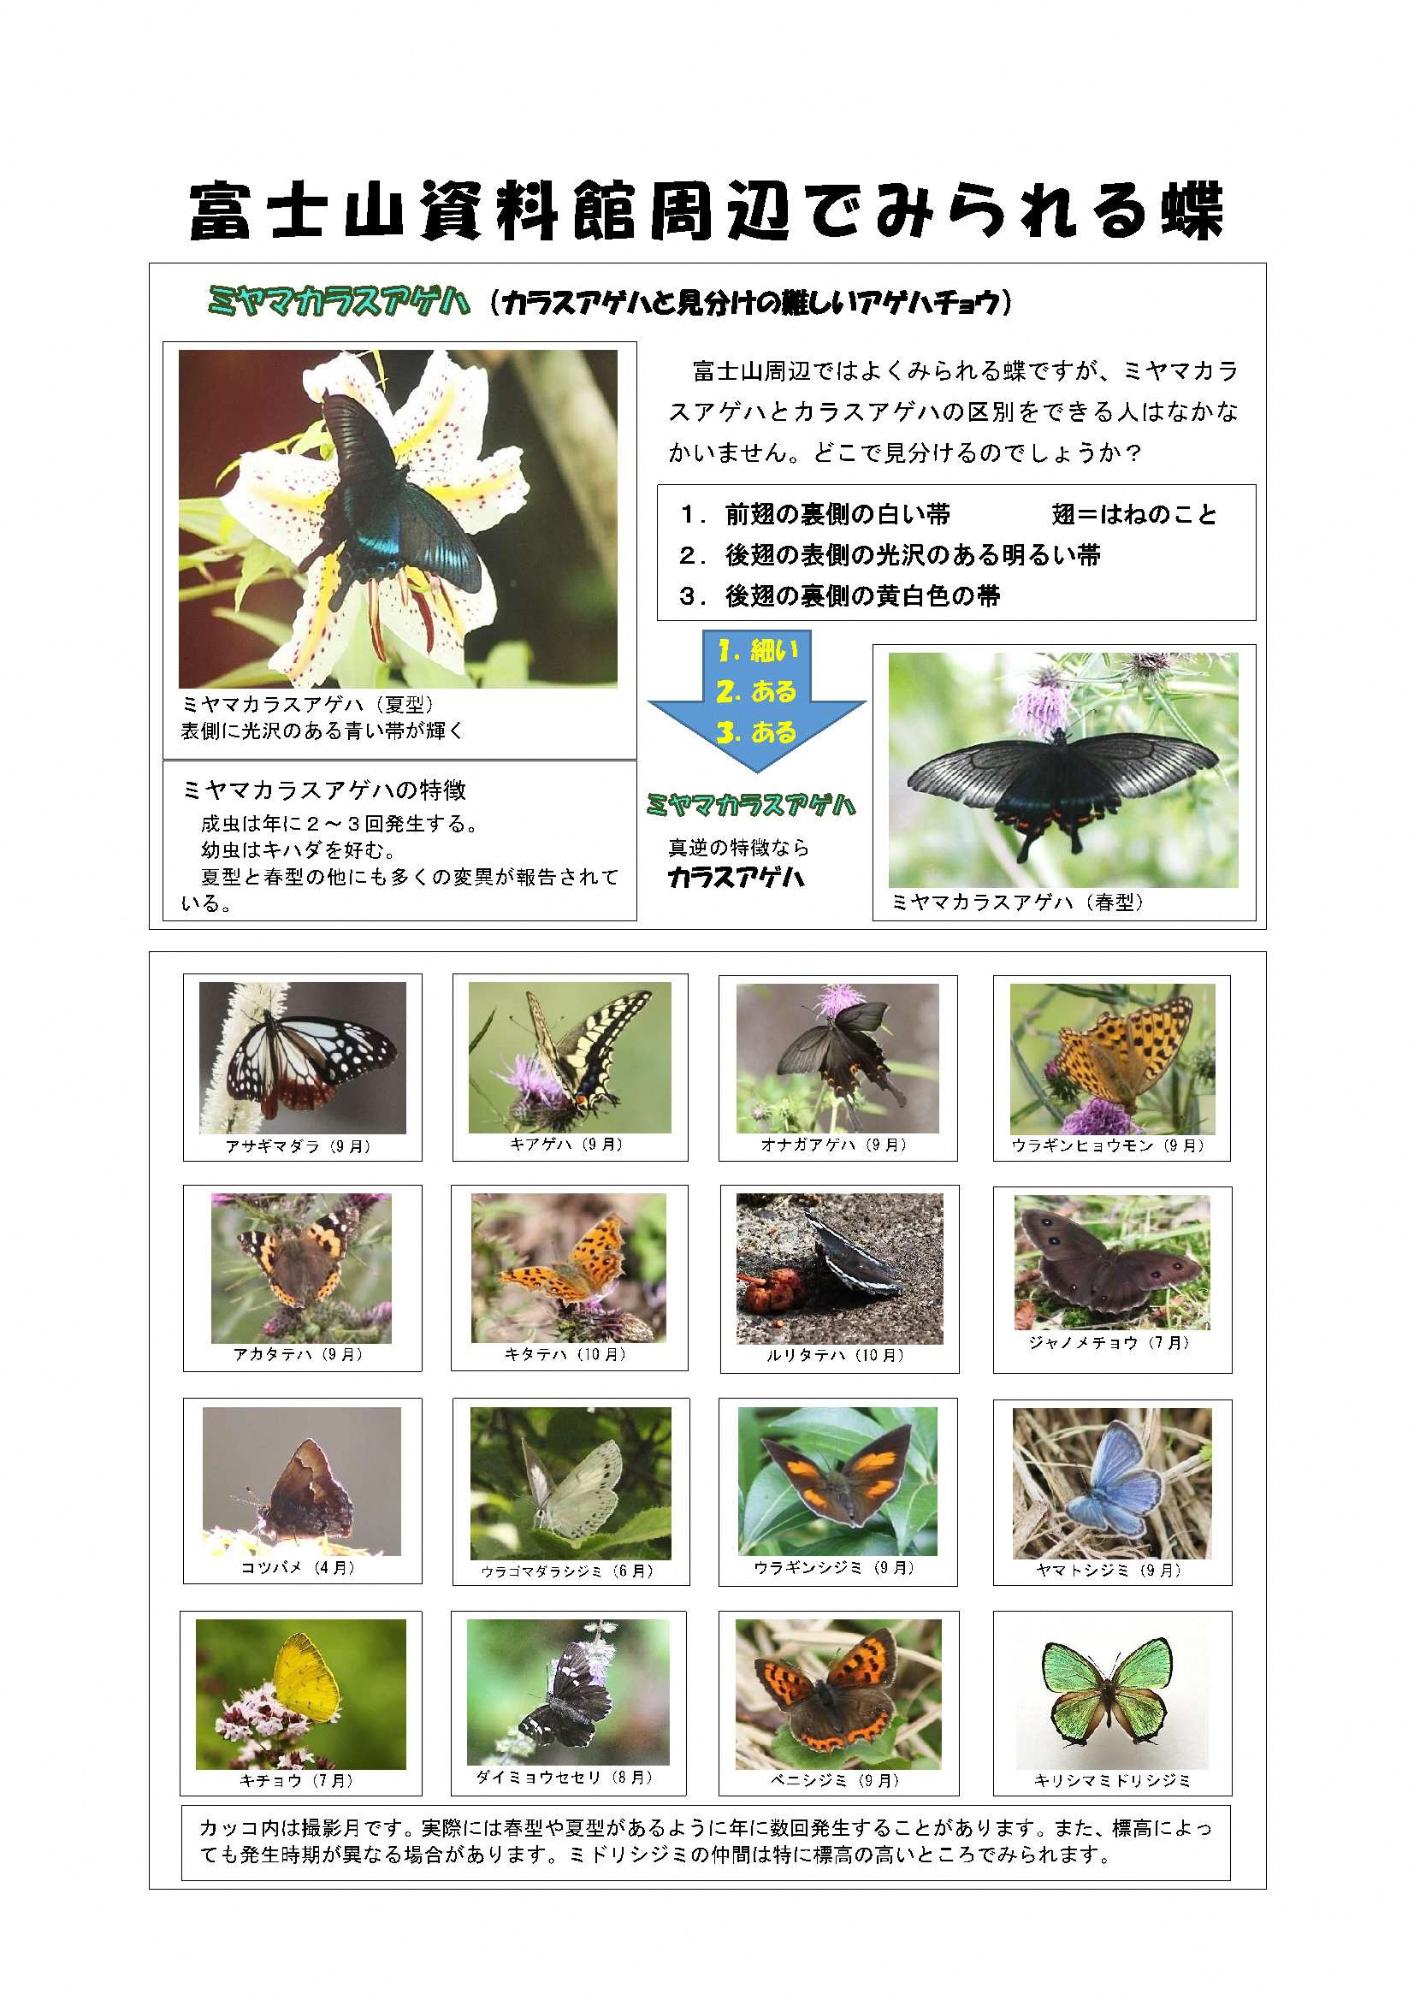 富士山資料館周辺でみられる蝶（ミヤマカラスアゲハ）